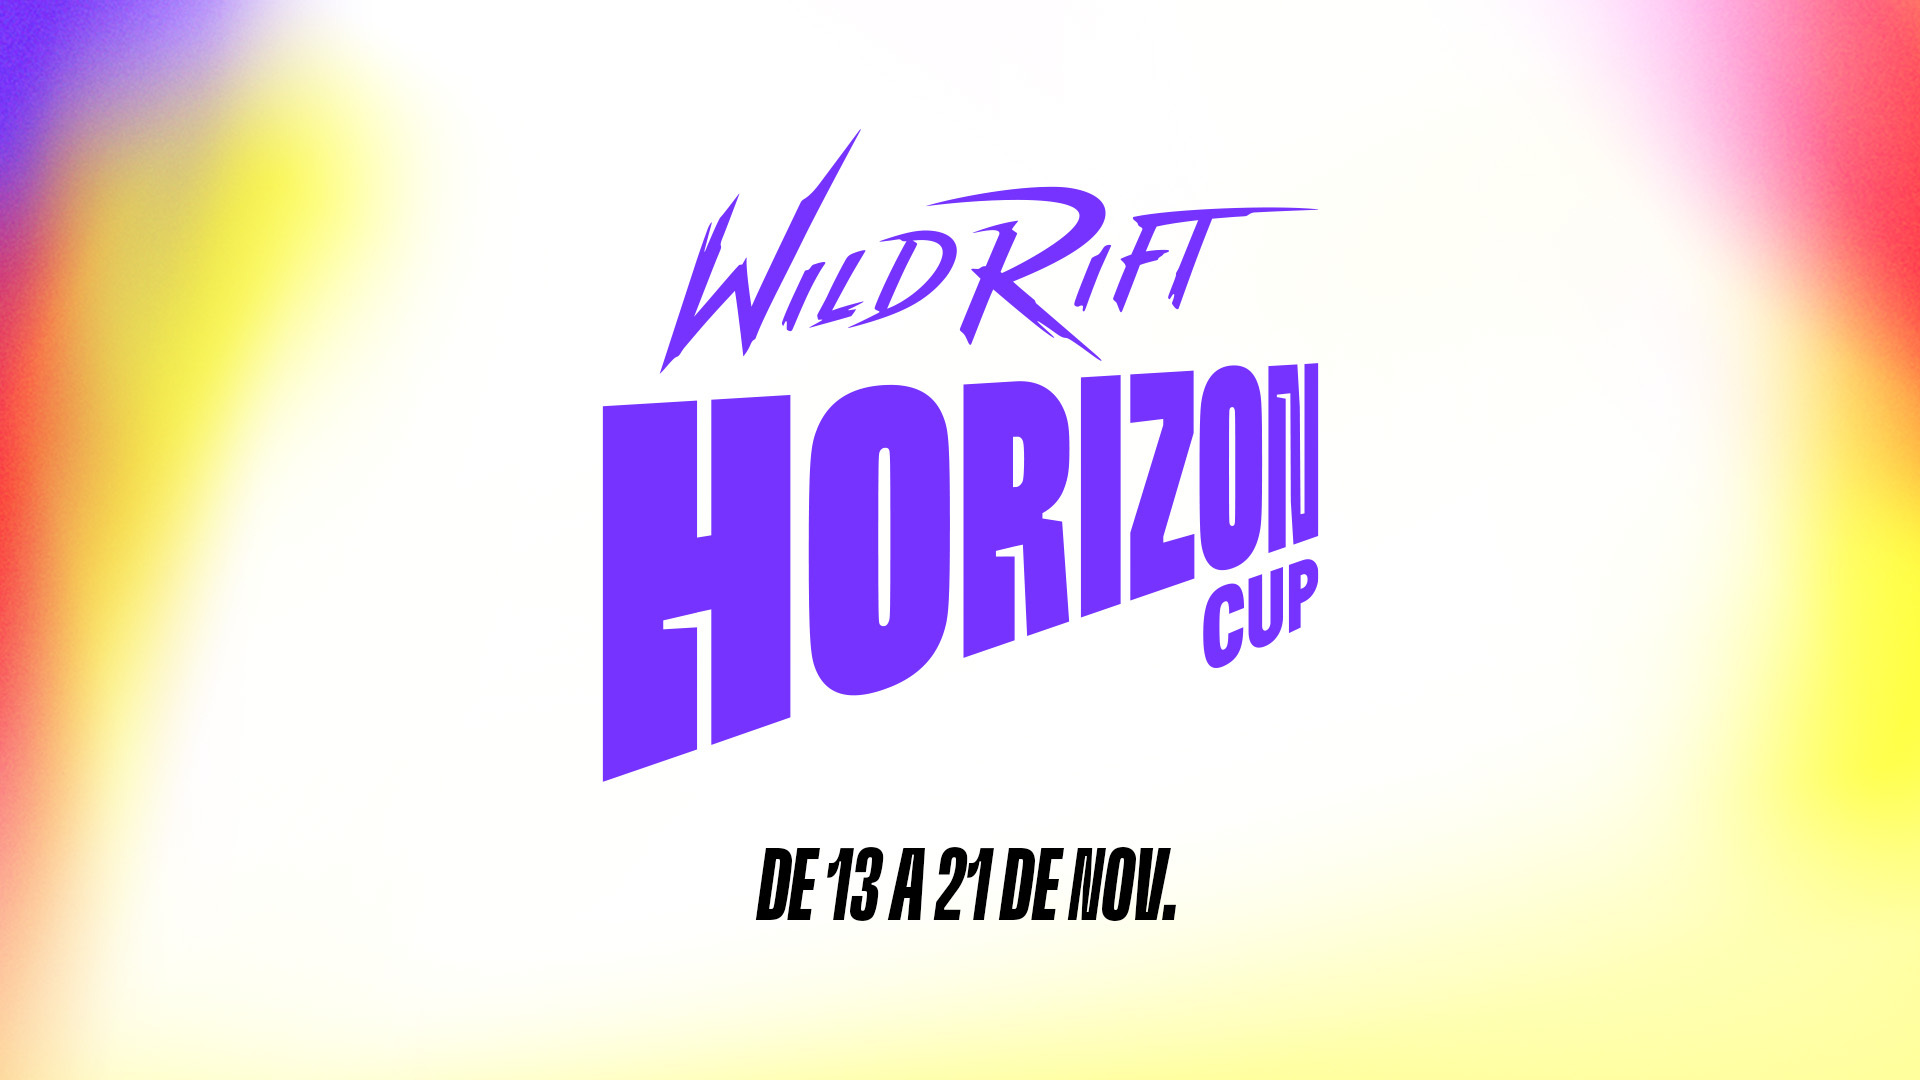 Cronograma das partidas da Wild Rift: Horizon Cup